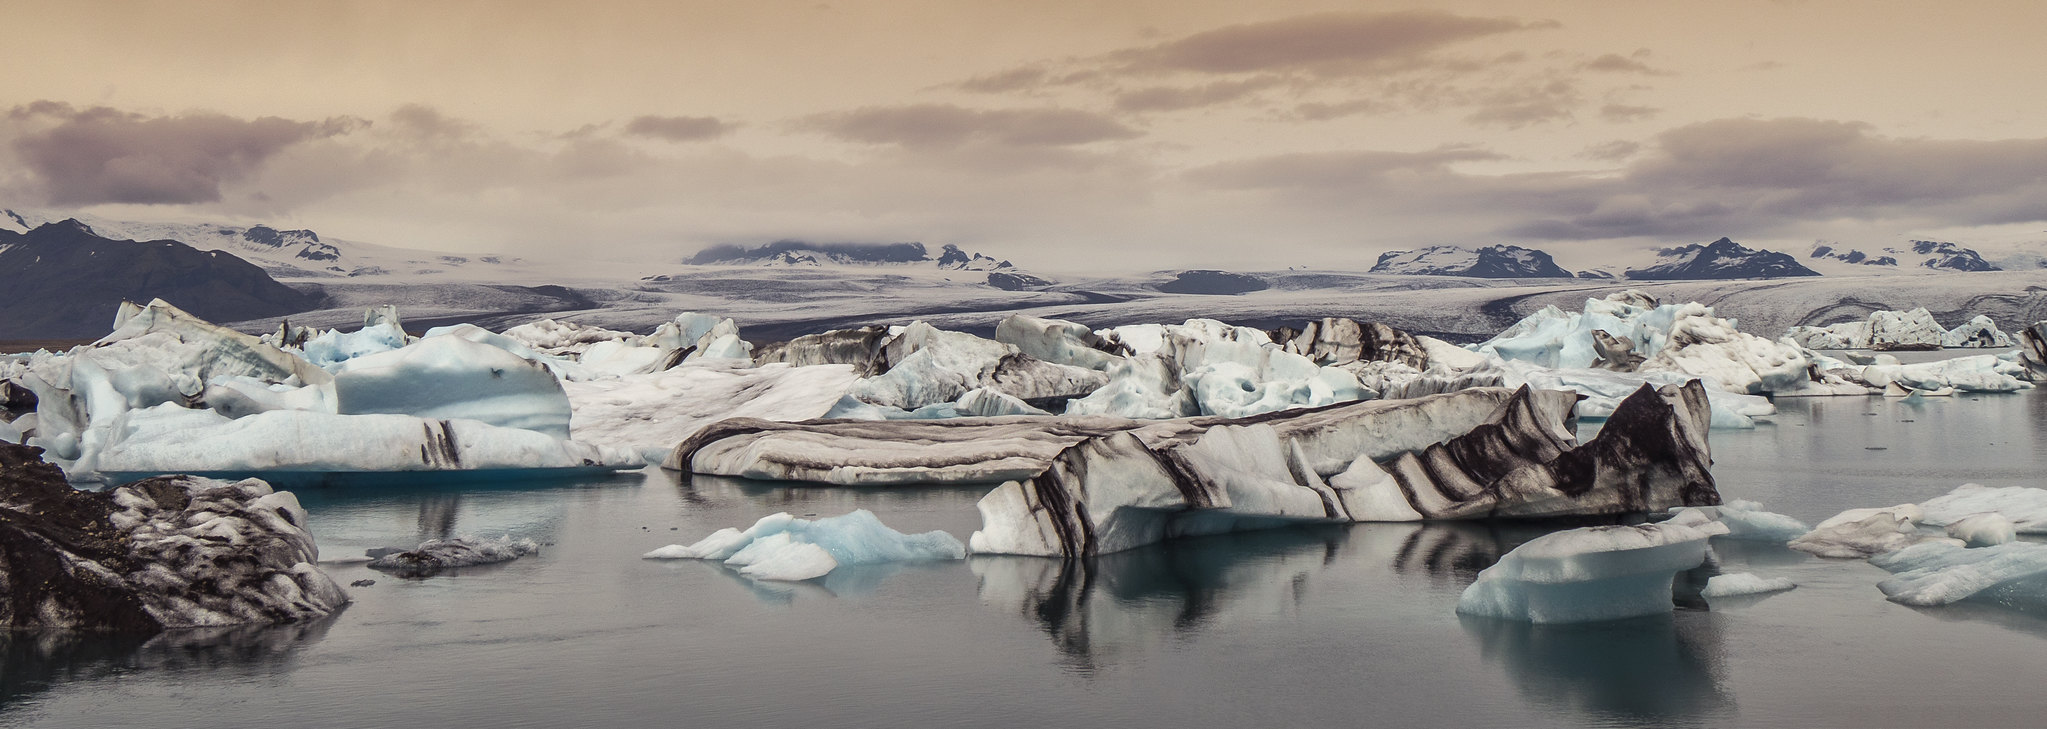 Clima muito frio, blocos de gelo e rochas imperam no país nórdico (Foto: Txetxu./Flickr)